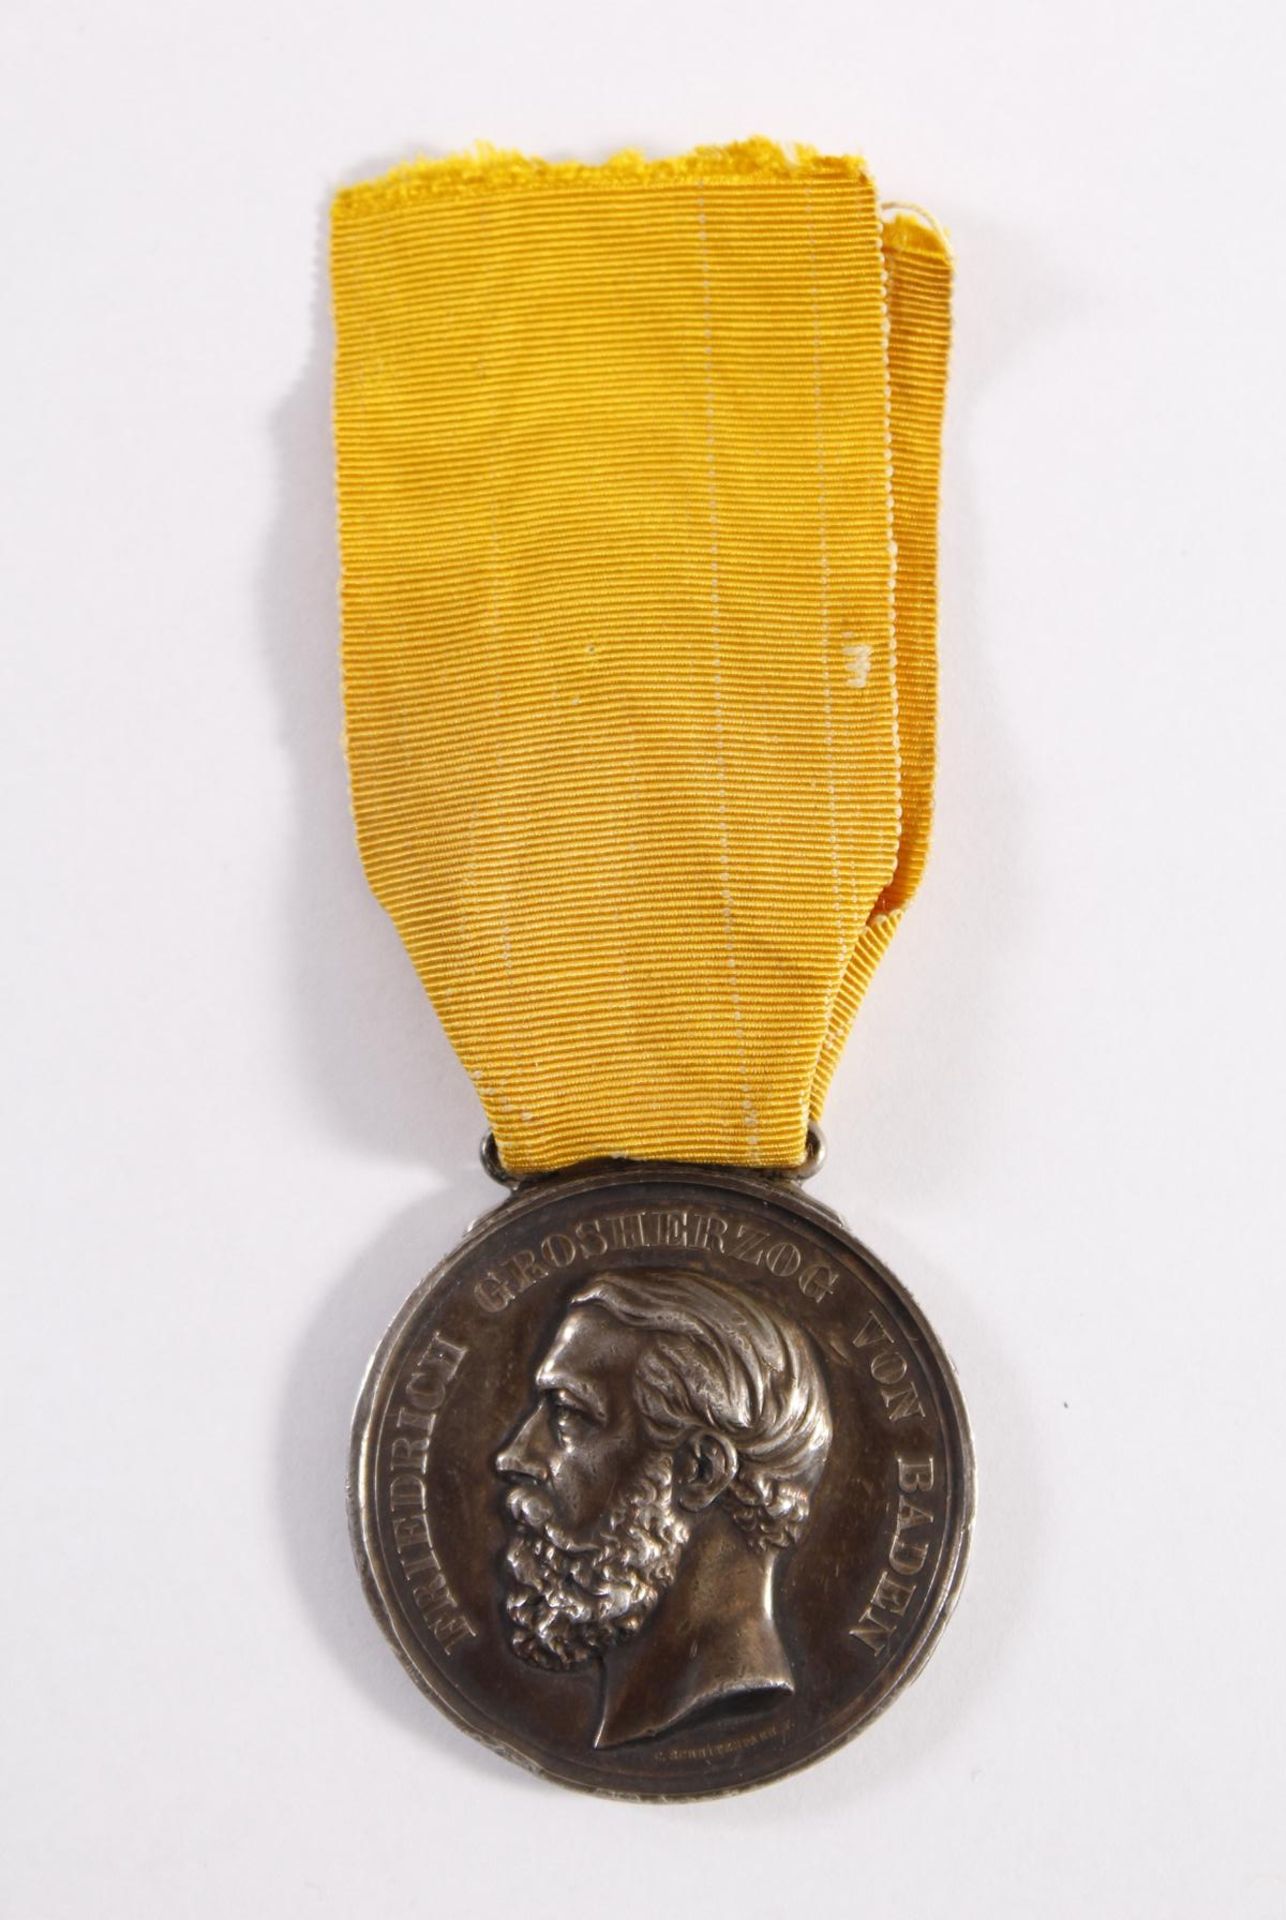 Baden: Große Silberne Verdienstmedaille an Band (1881-1896)Durchmesser ca. 40,5 mm, oben